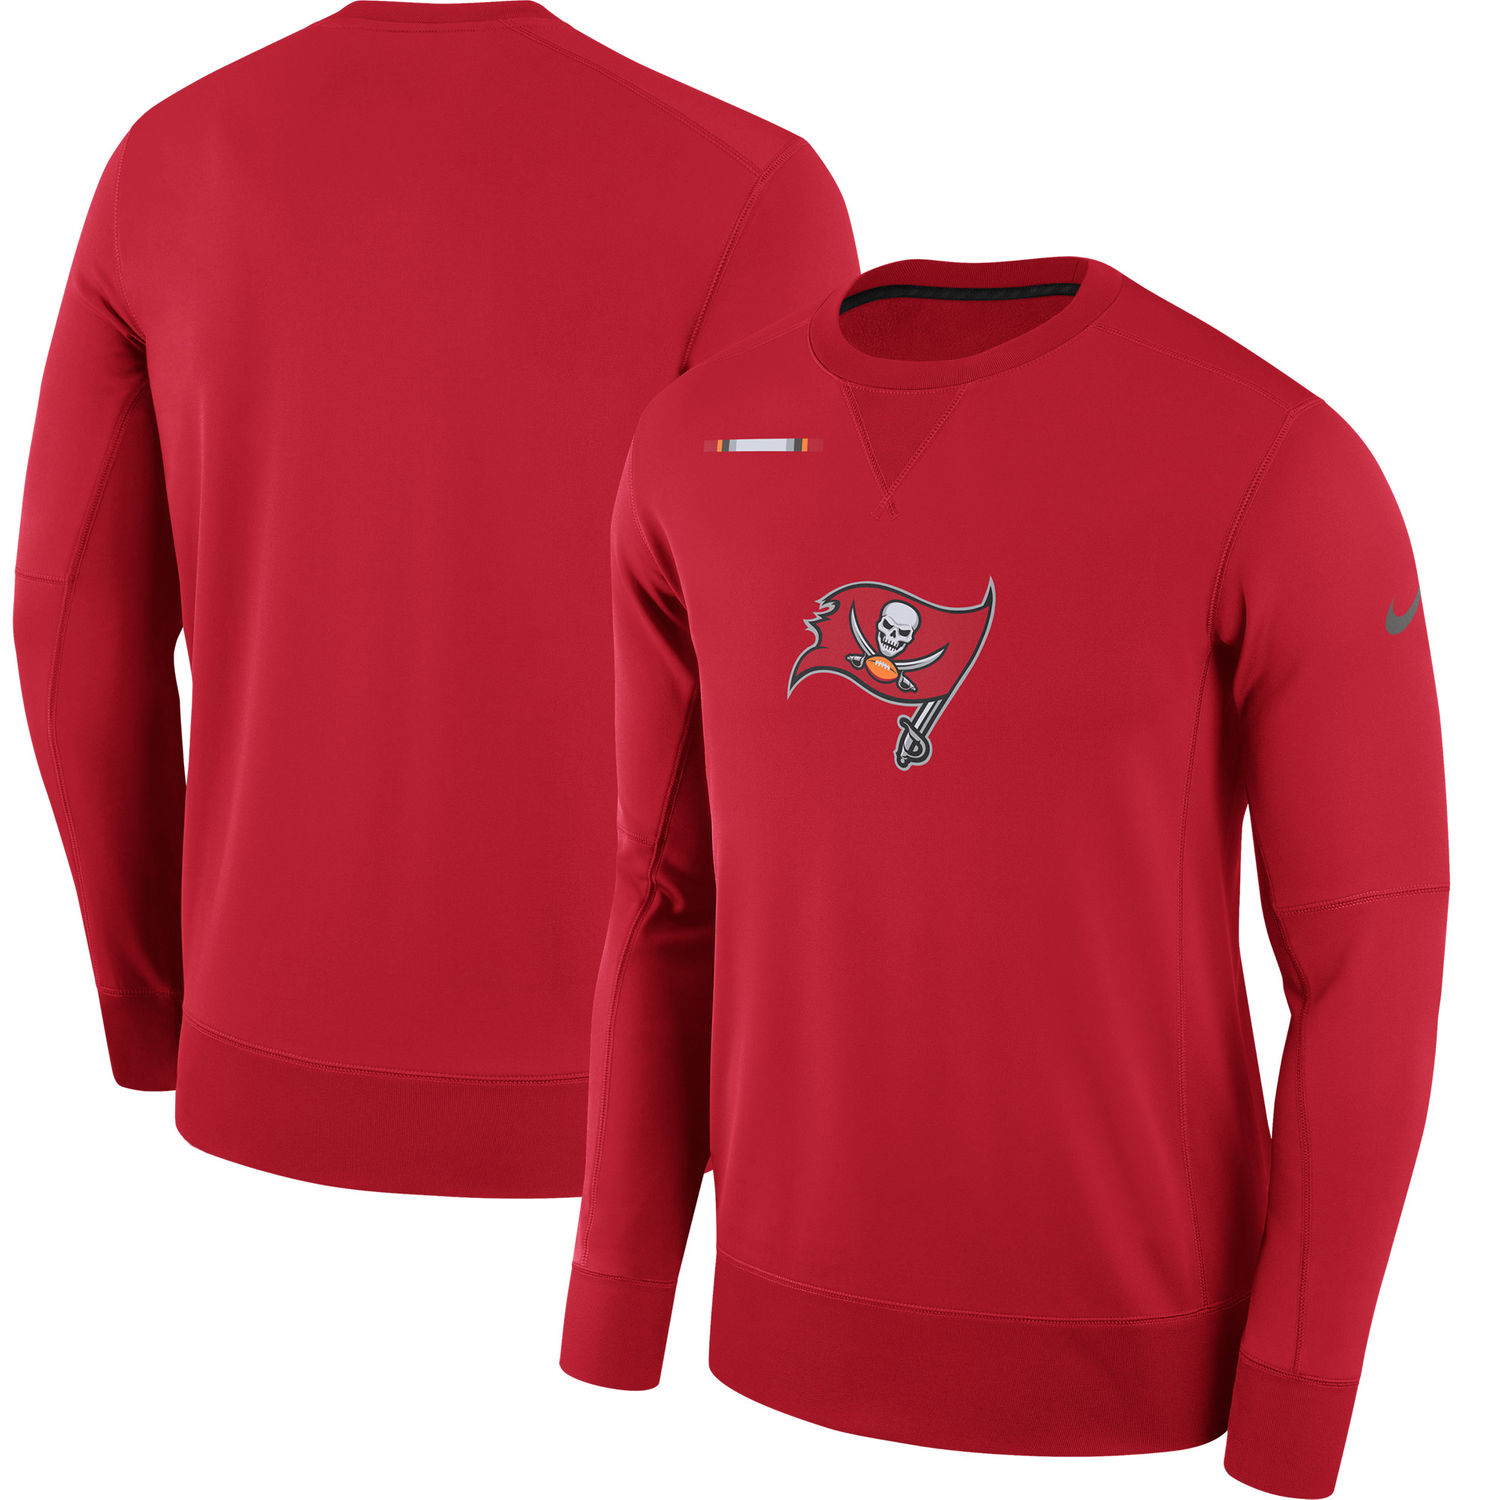 Men's Tampa Bay Buccaneers Nike Red Sideline Team Logo Performance Sweatshirt